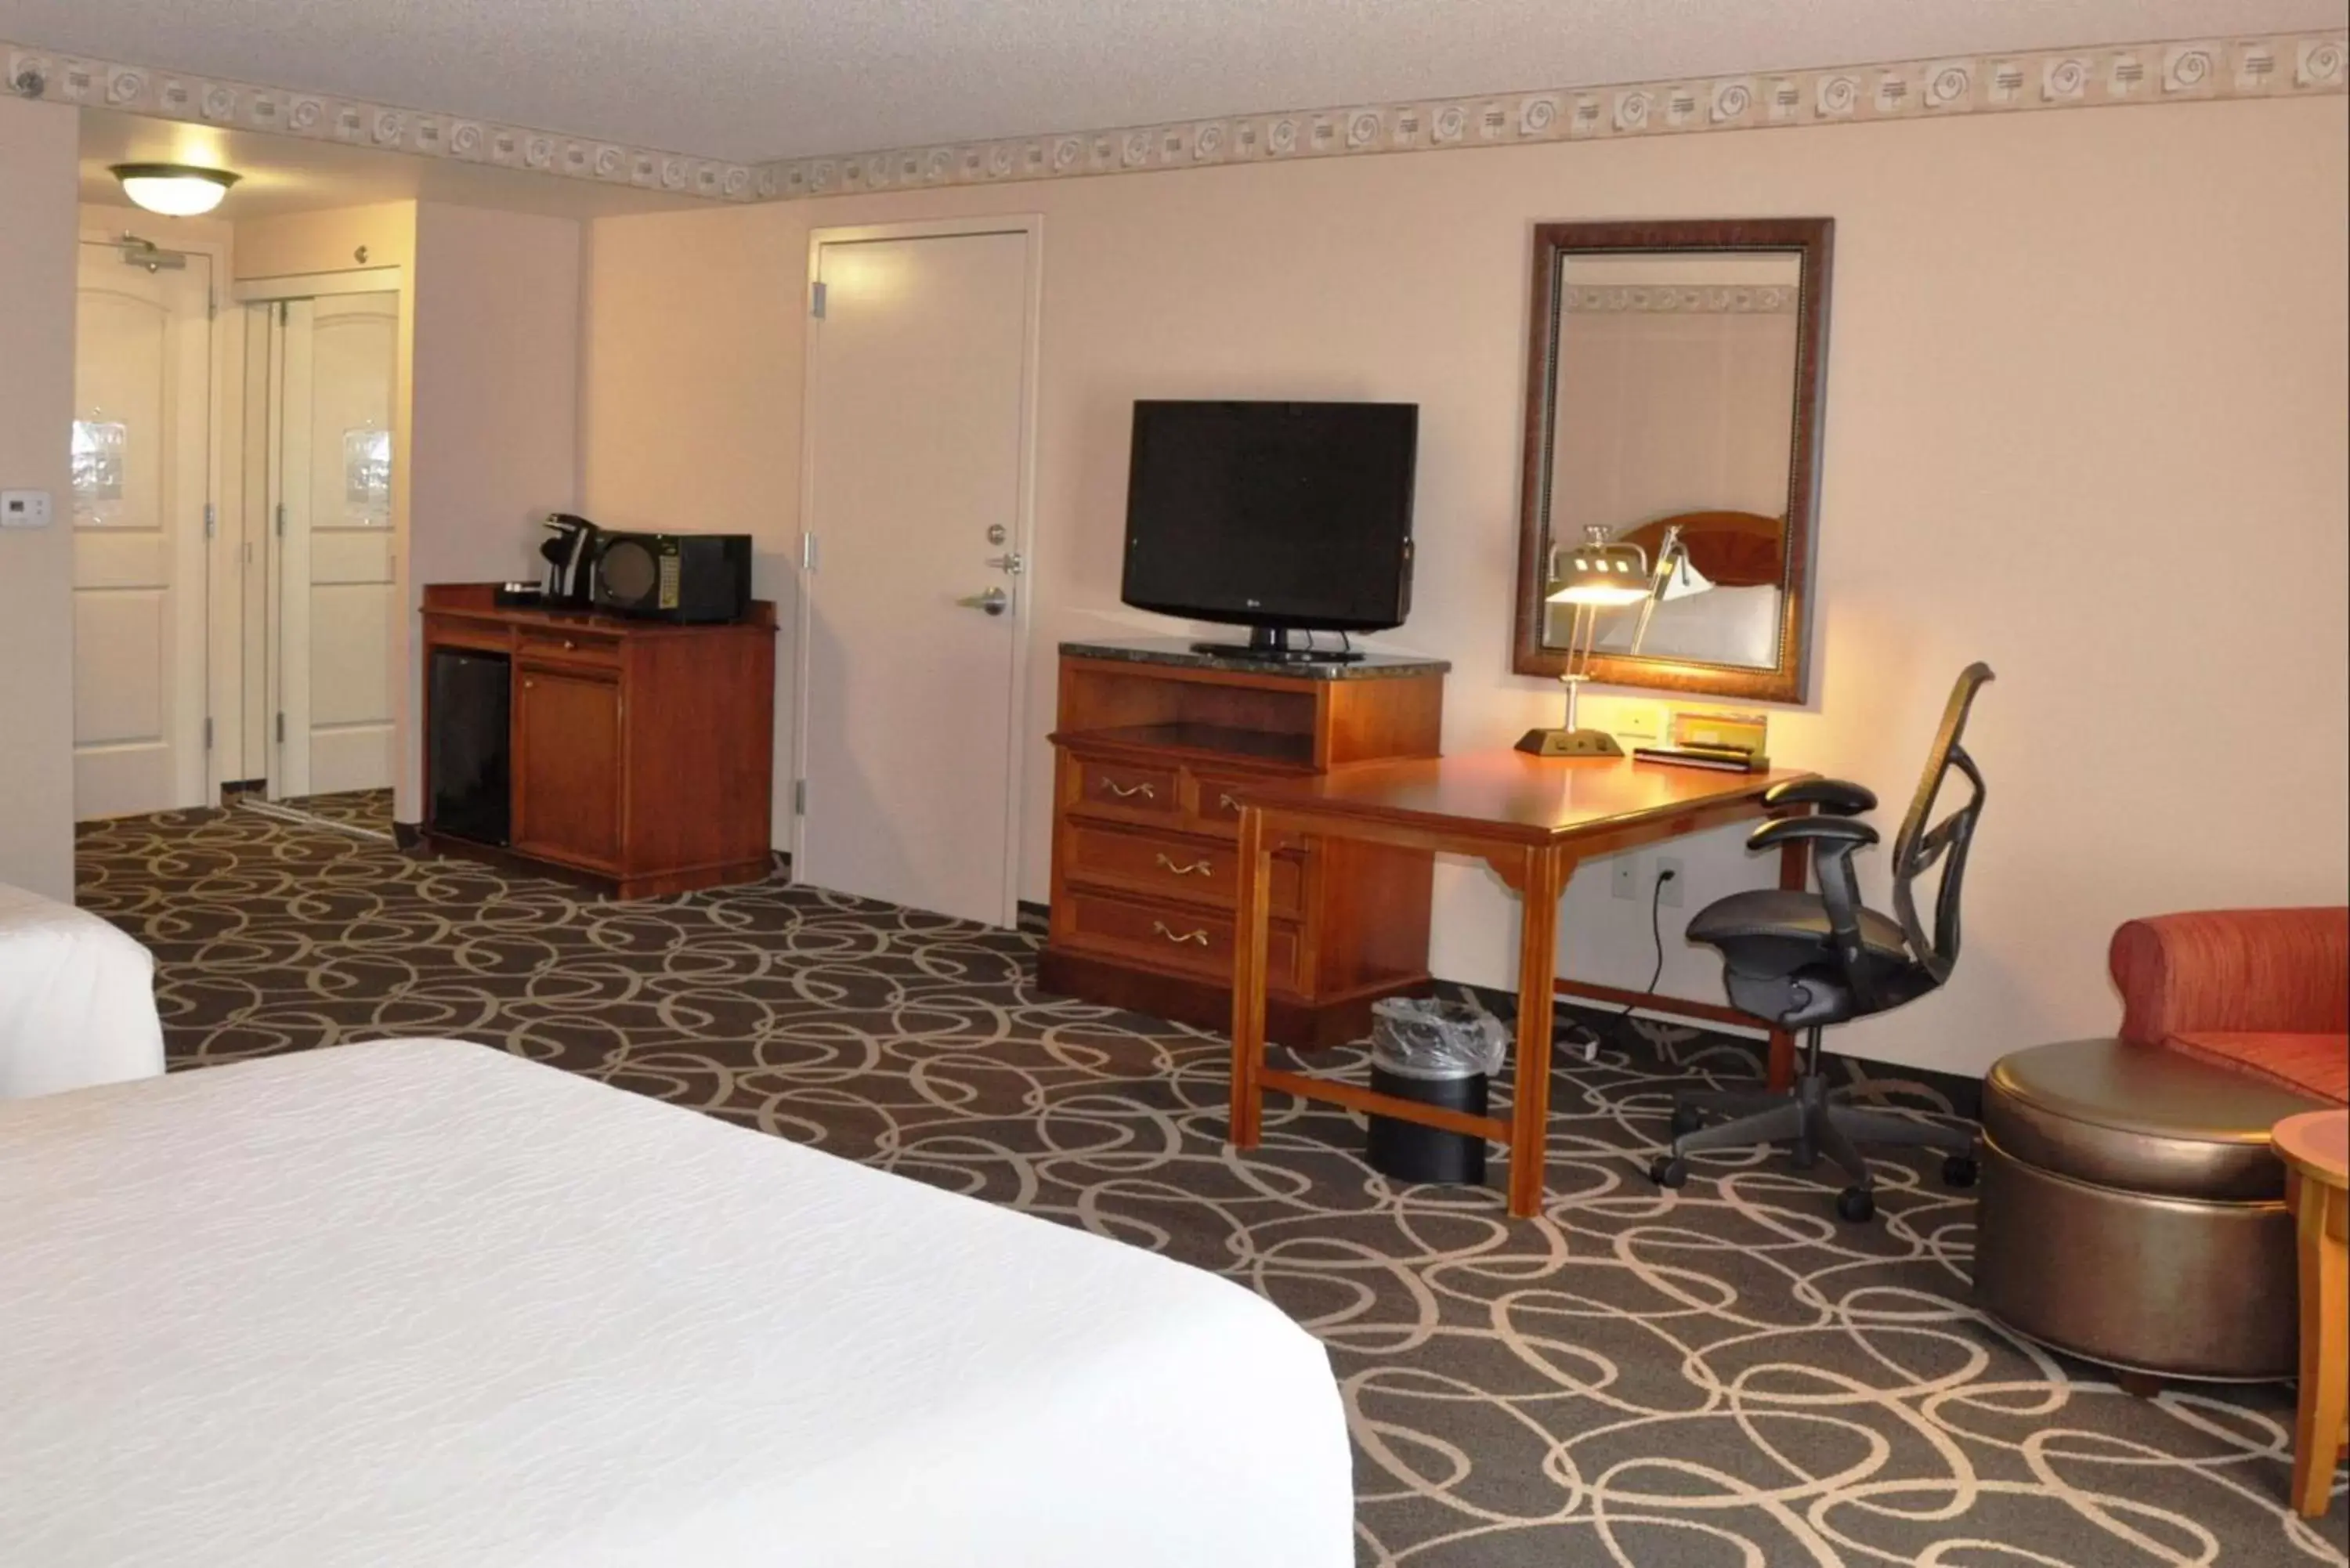 Bedroom, TV/Entertainment Center in Hilton Garden Inn Gettysburg